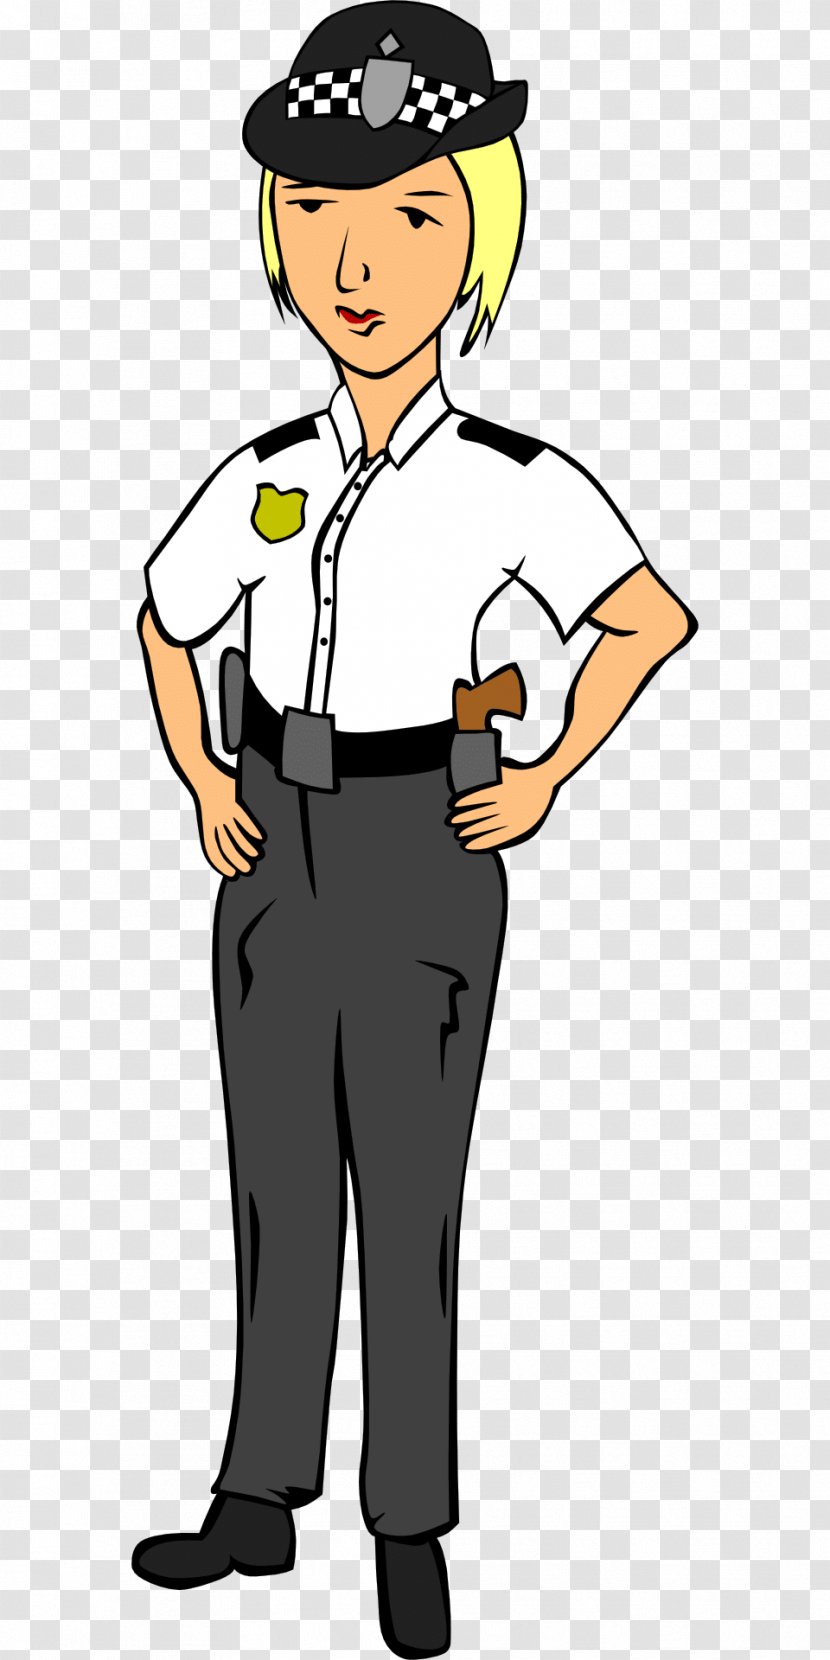 Police Officer Cartoon Clip Art - Headgear Transparent PNG